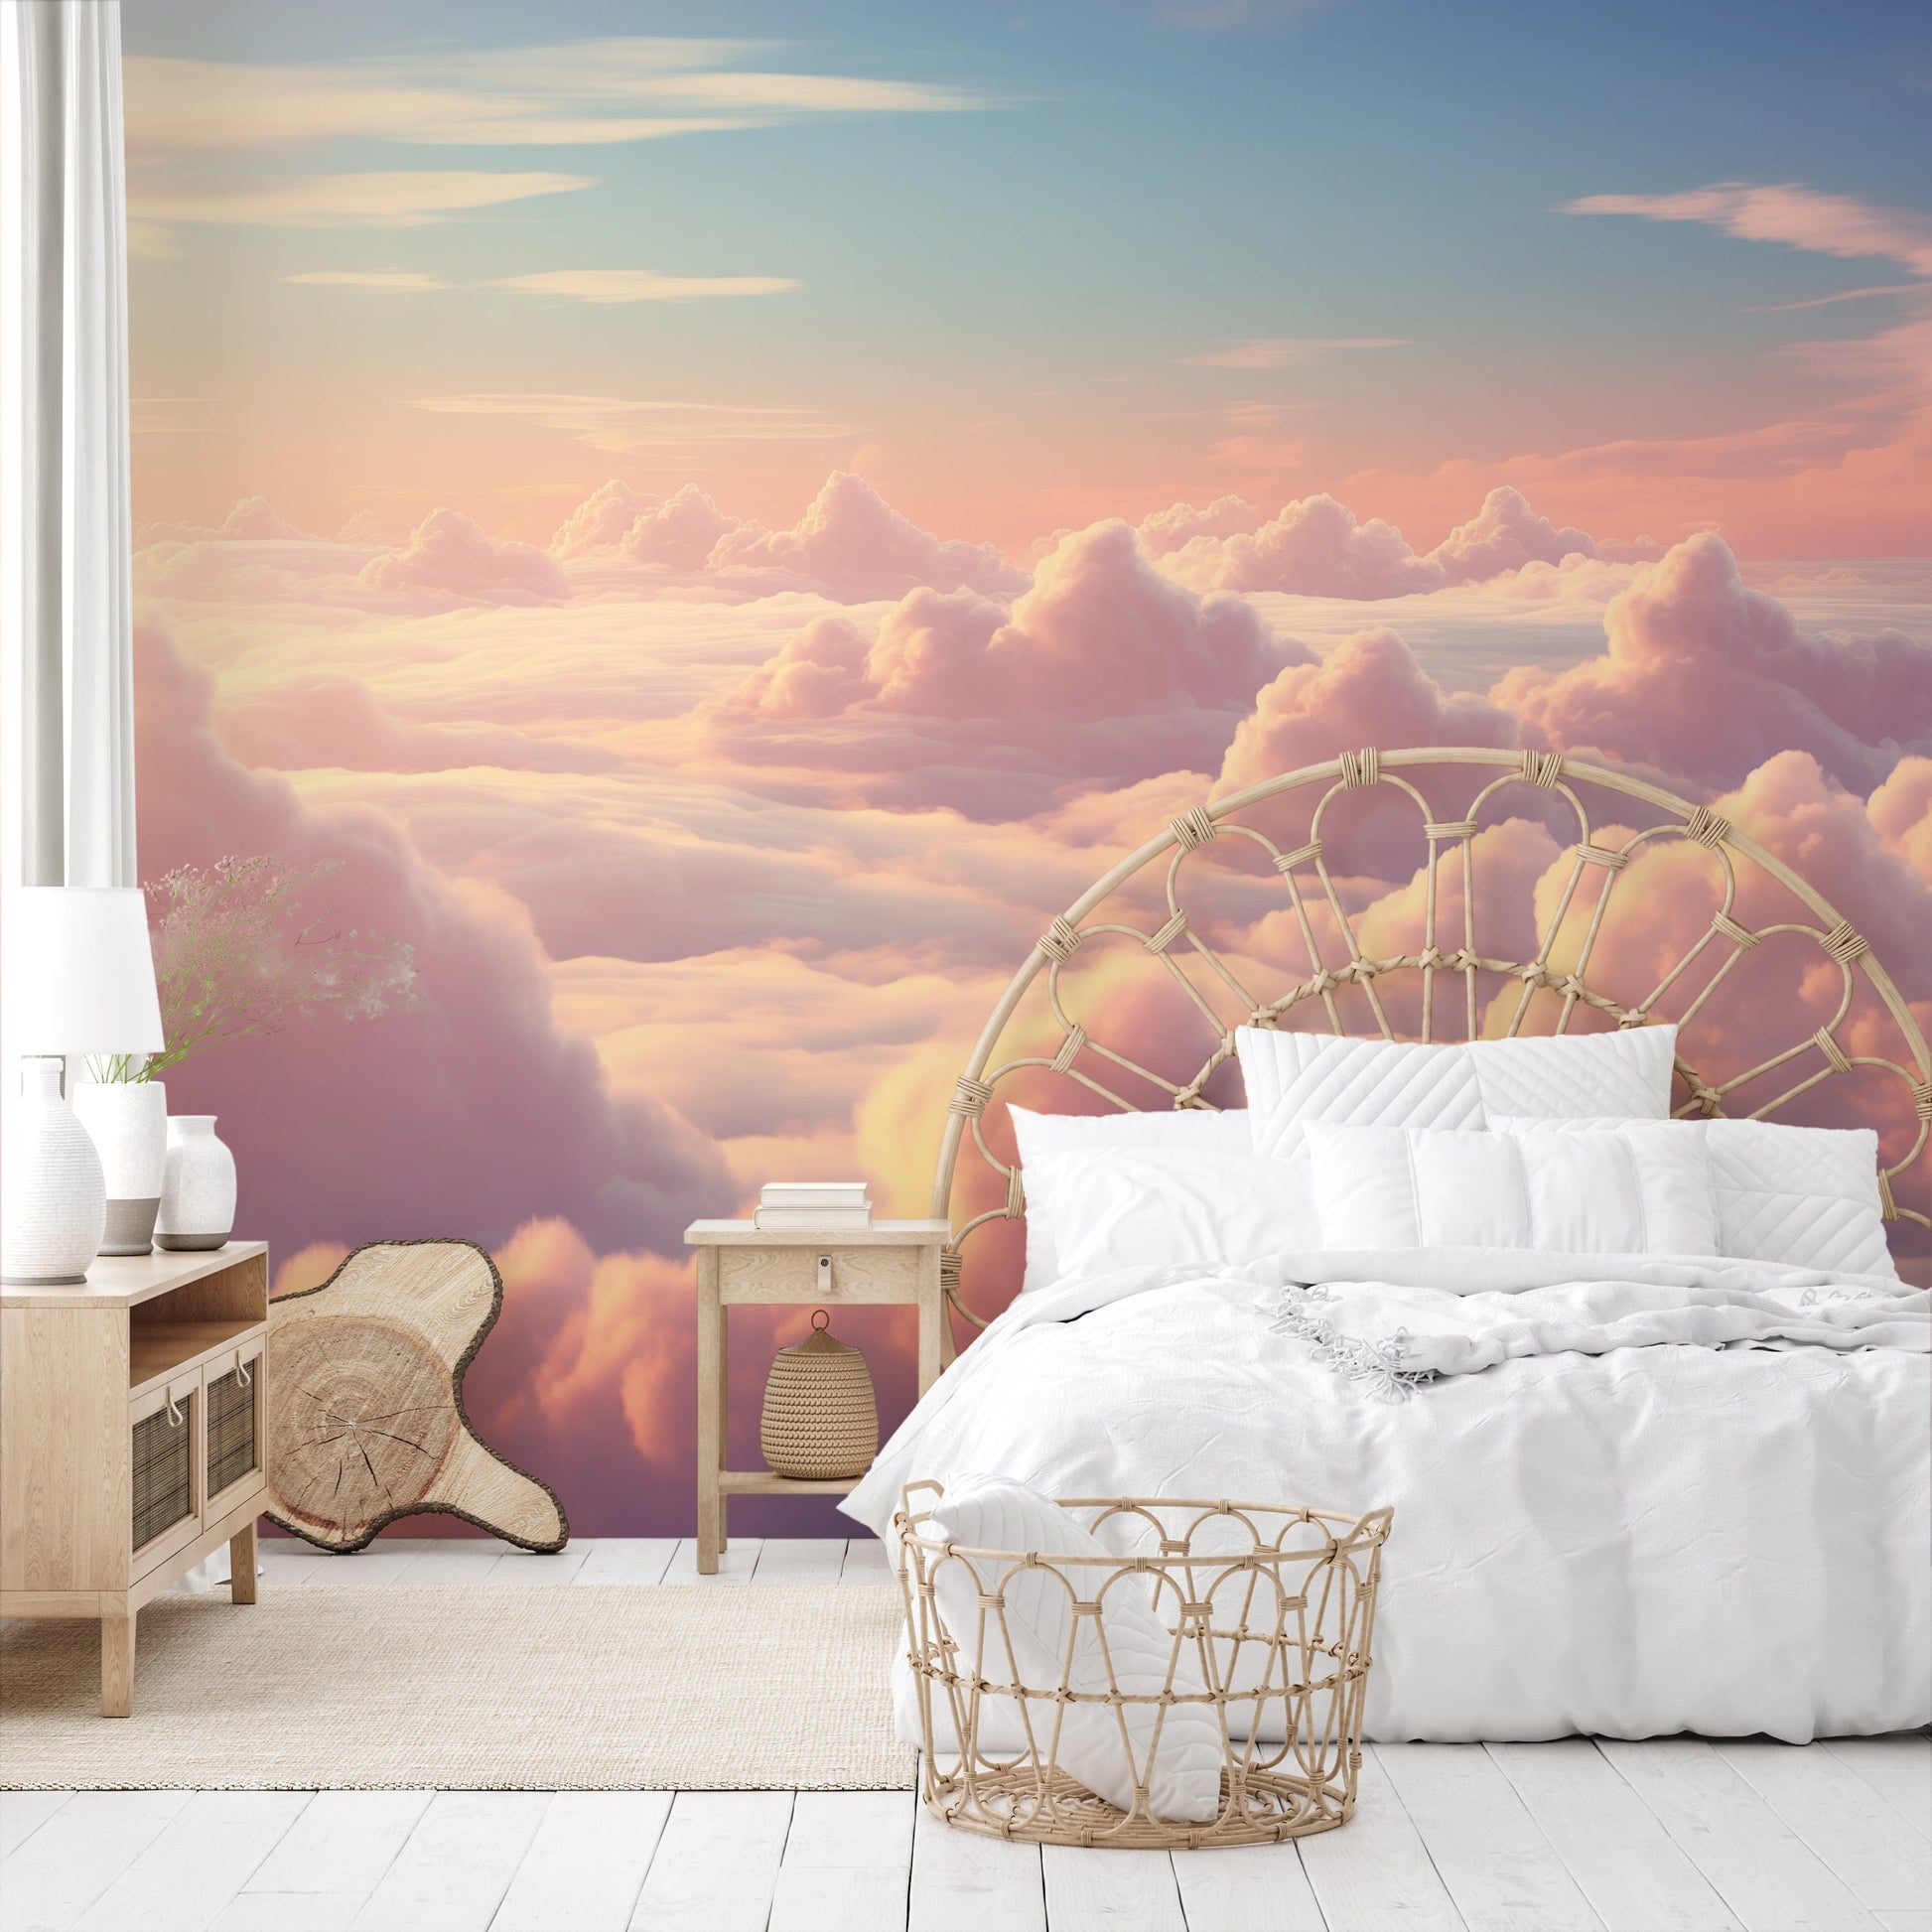 Wzór fototapety artystycznej o nazwie Heavenly Dawn pokazanej w aranżacji wnętrza.